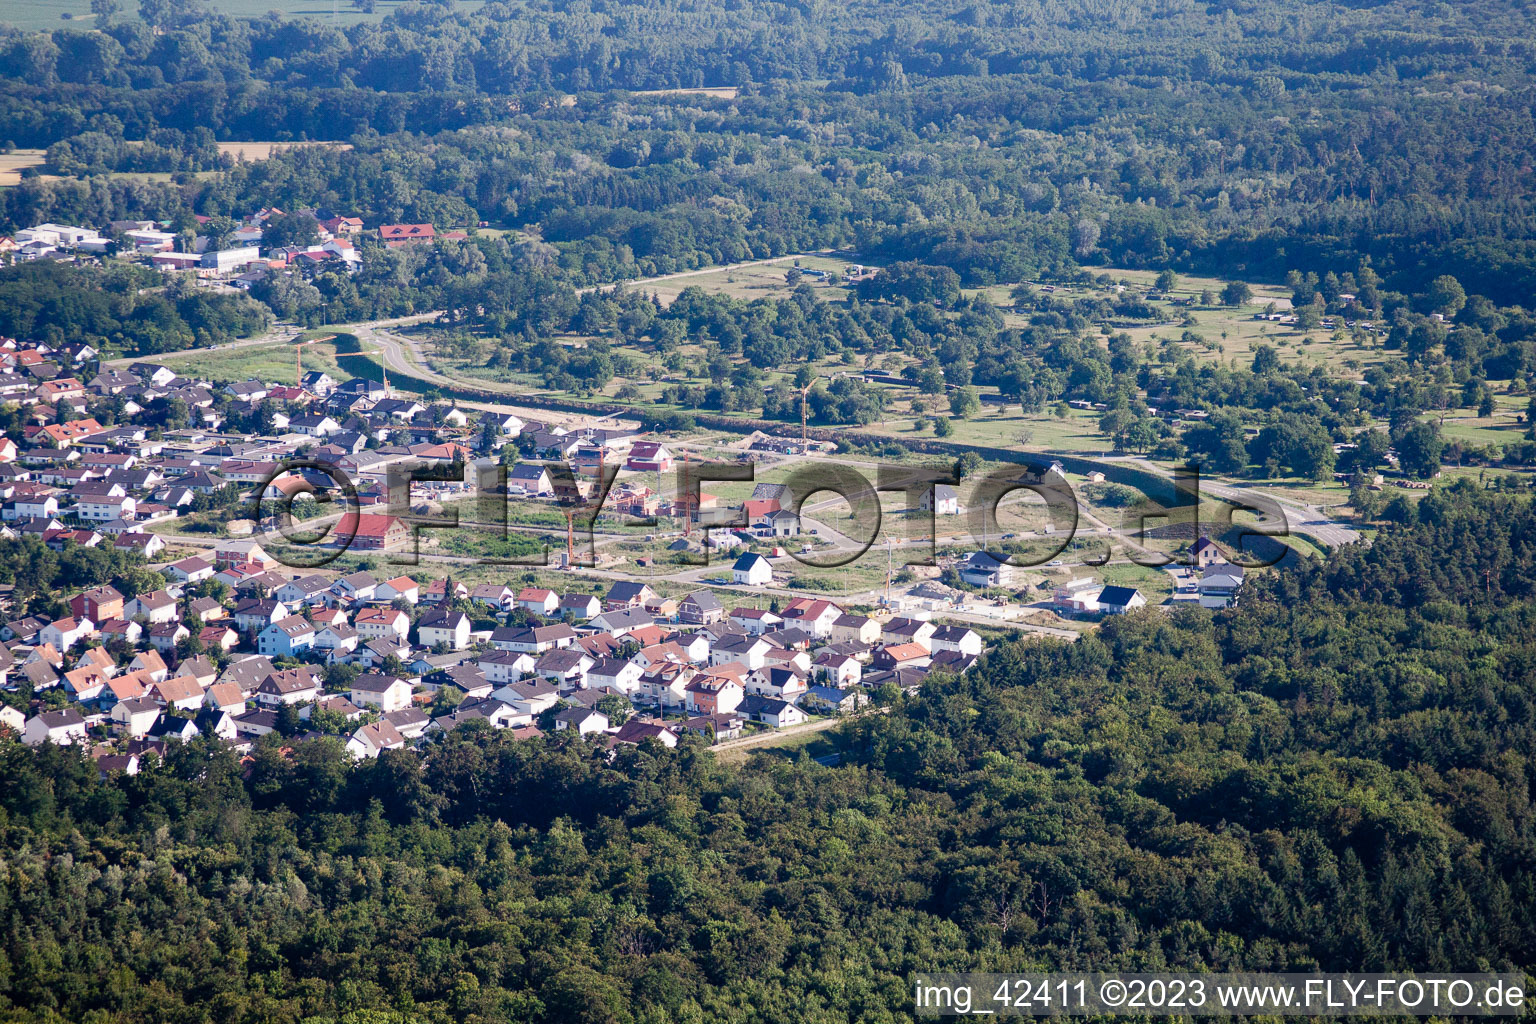 Luftbild von Jockgrim, Neubaugebiet West im Bundesland Rheinland-Pfalz, Deutschland